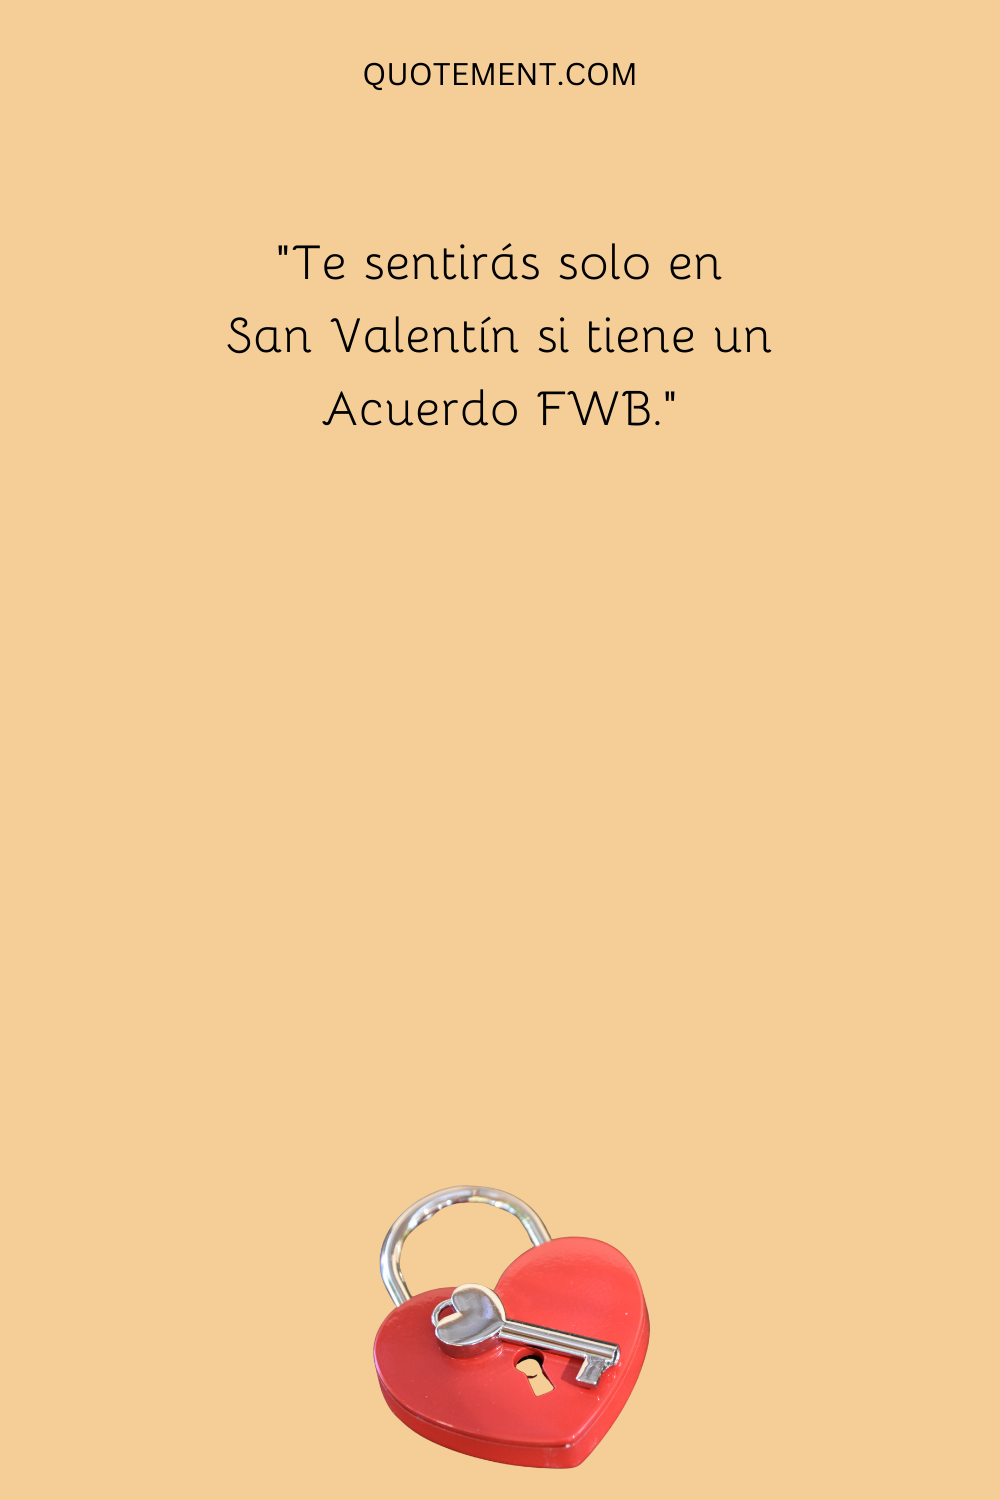 "Te sentirás solo en San Valentín si tienes un acuerdo FWB".